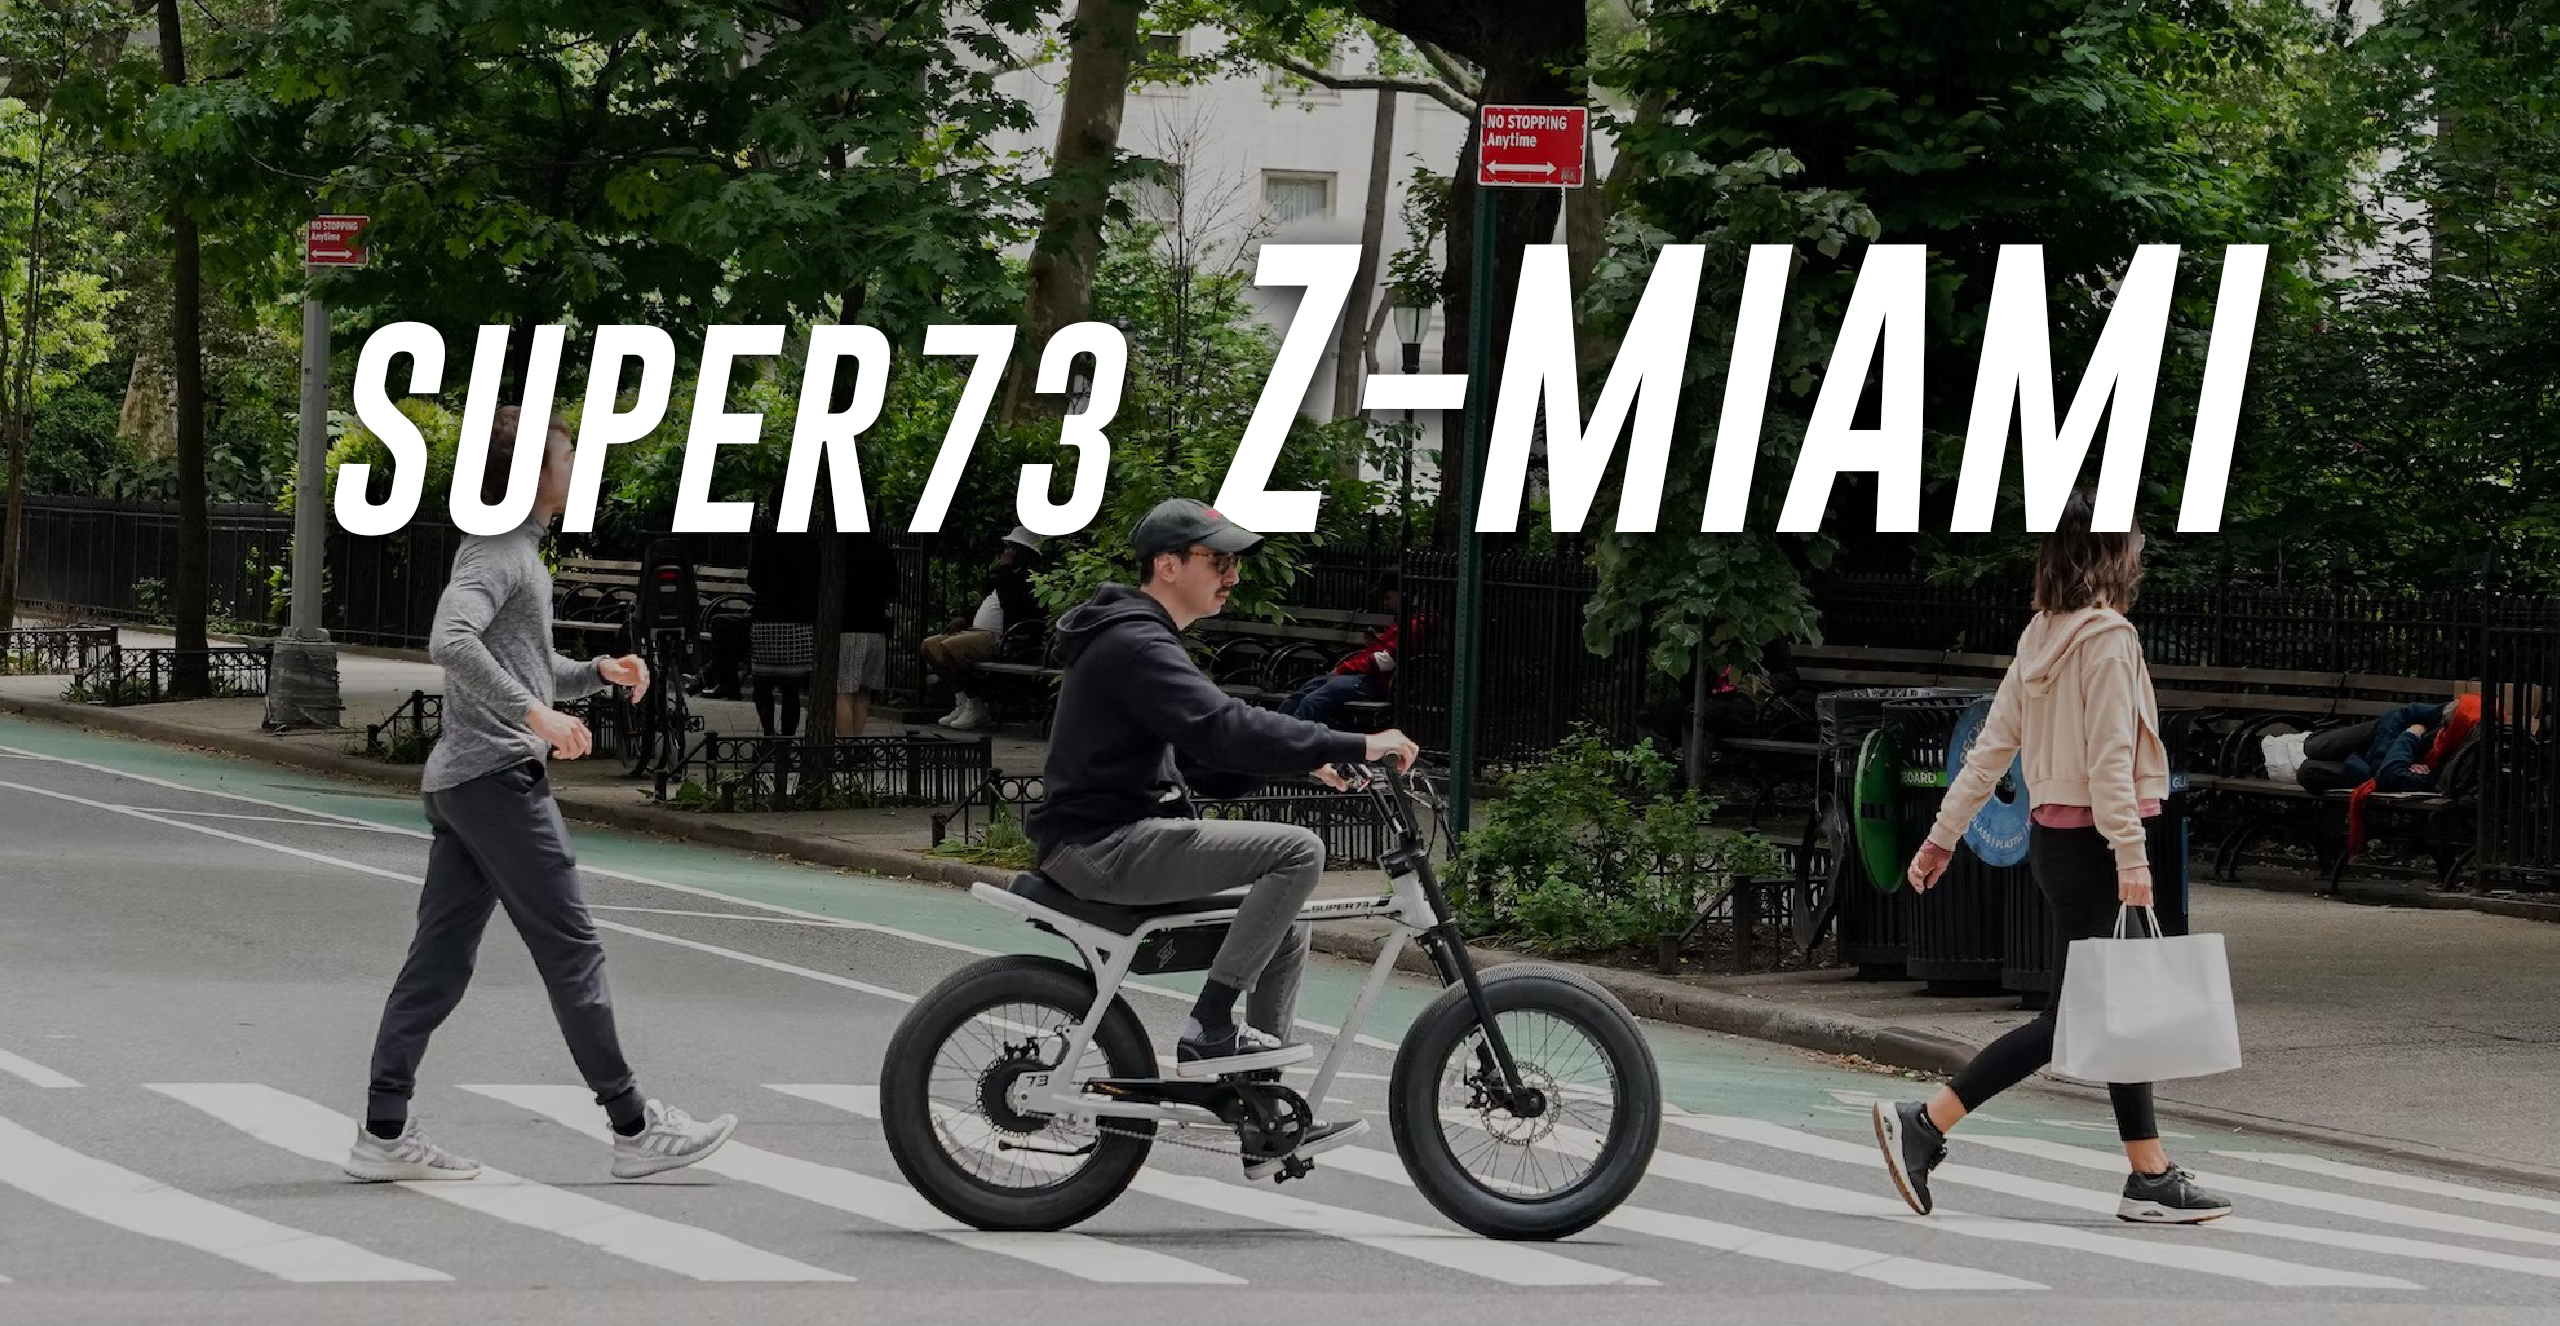 Super73-Z MIAMI